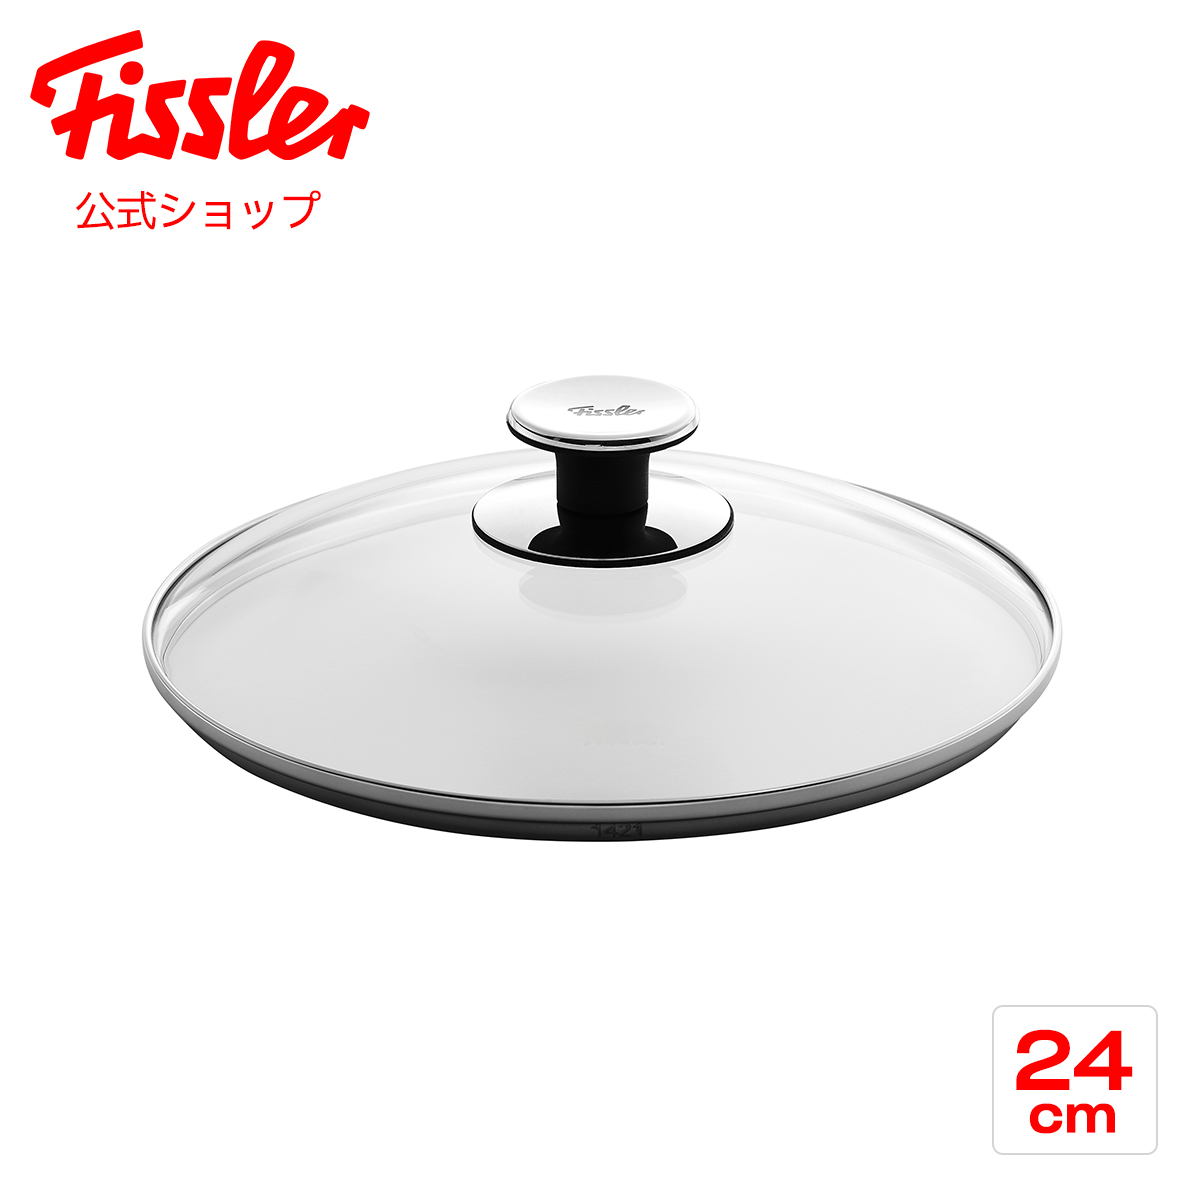 ブランド雑貨総合 フィスラー ガラスフタ 24cm Fissler メーカー公式 硝子製 鍋用 フライパン用 蓋 001-104-24-200